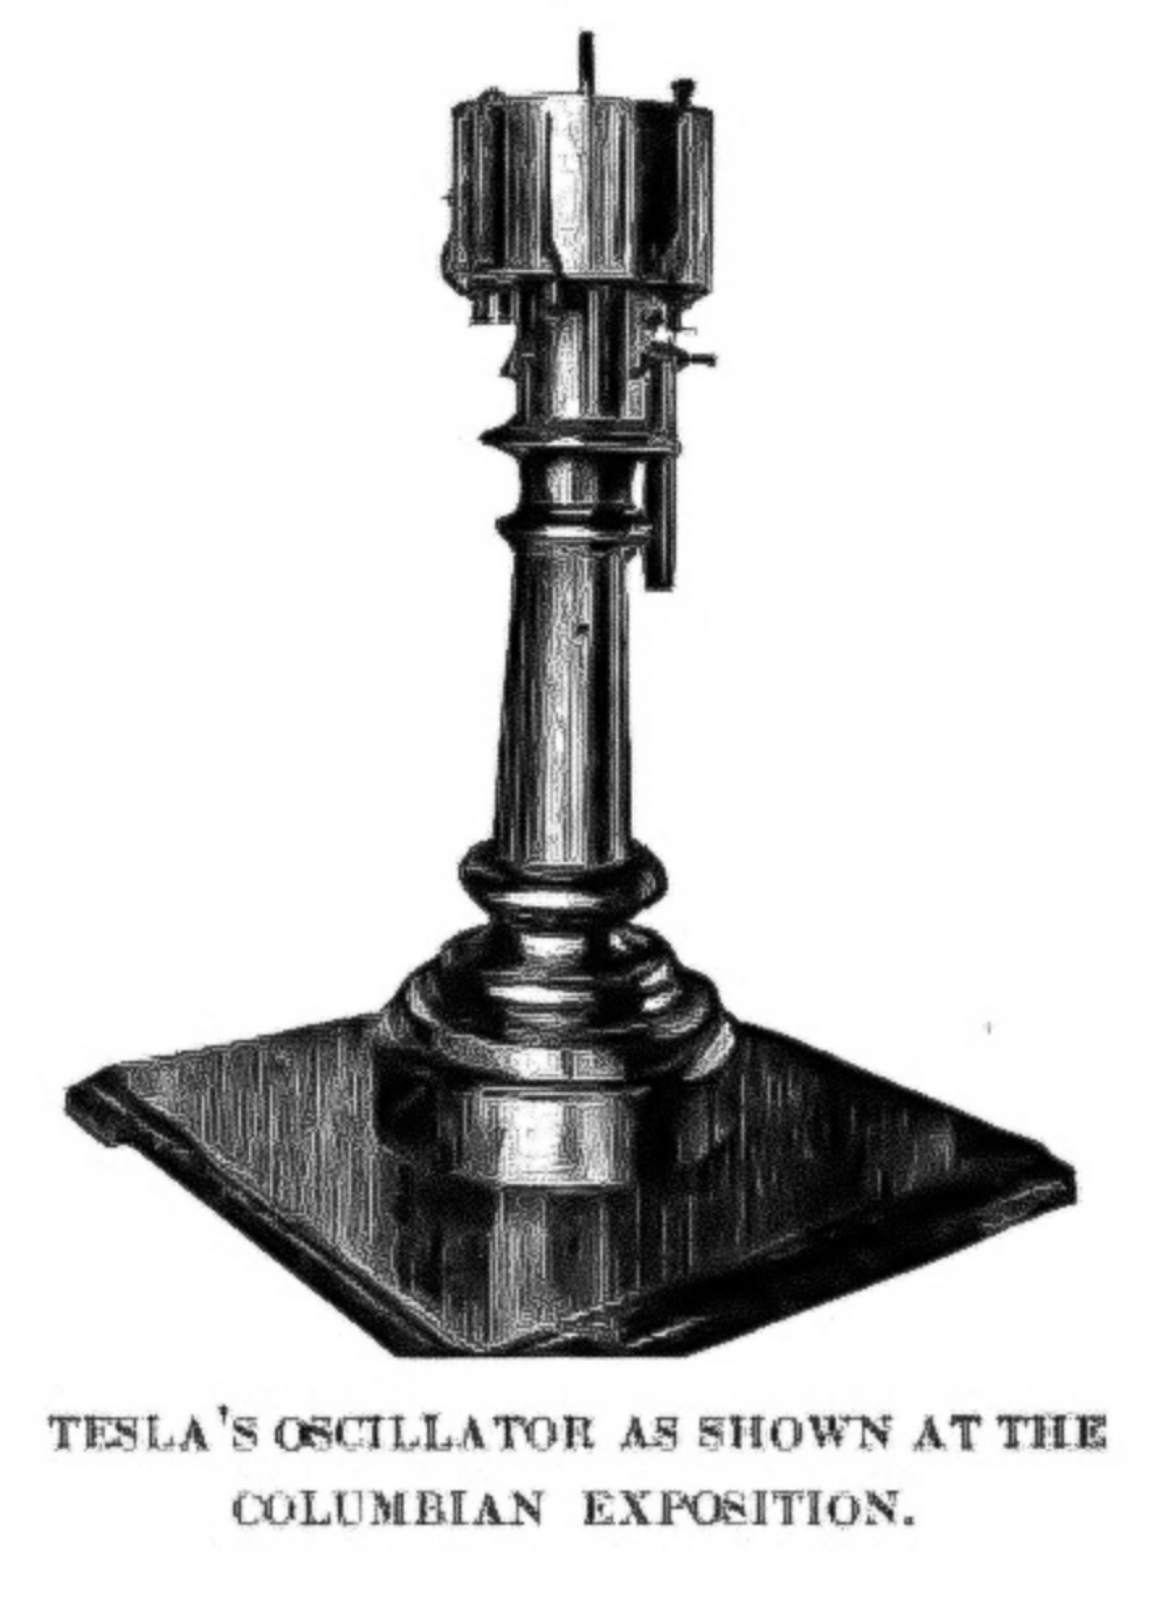 Электромеханический осциллятор Теслы, паровой электрический генератор, запатентованный Николой Теслой в 1893 году.